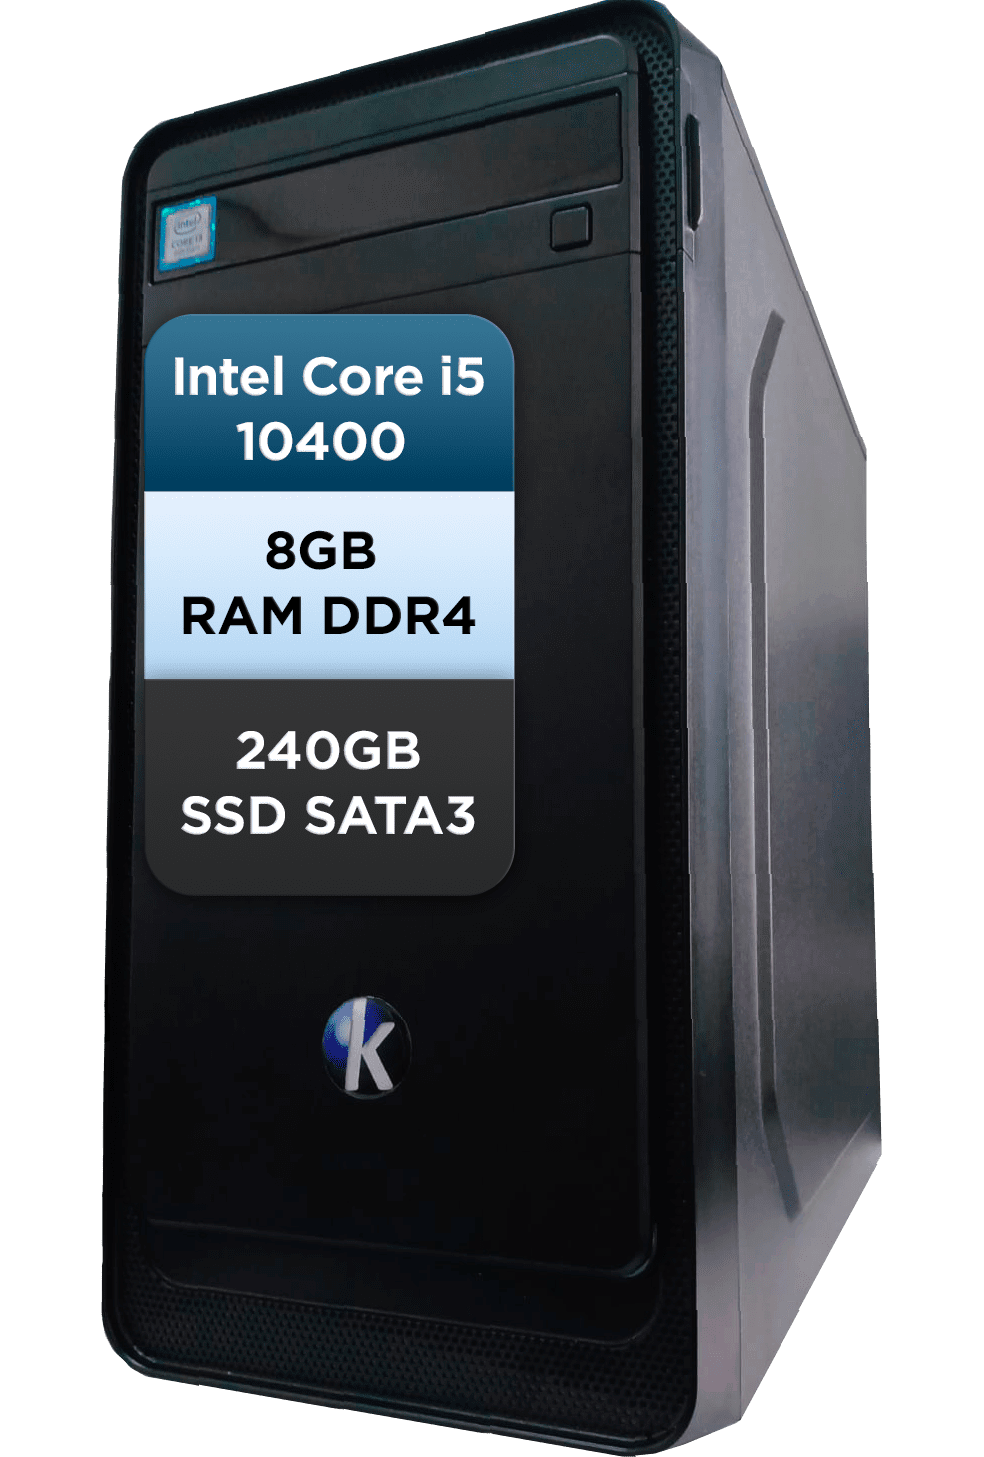 Computador Intel Core i5 10400F 8GB DDR4 SSD 240GB Free Dos KIS - Konrath  InfoStore - Informática - Computadores Notebooks Acessórios Assistência  Técnica